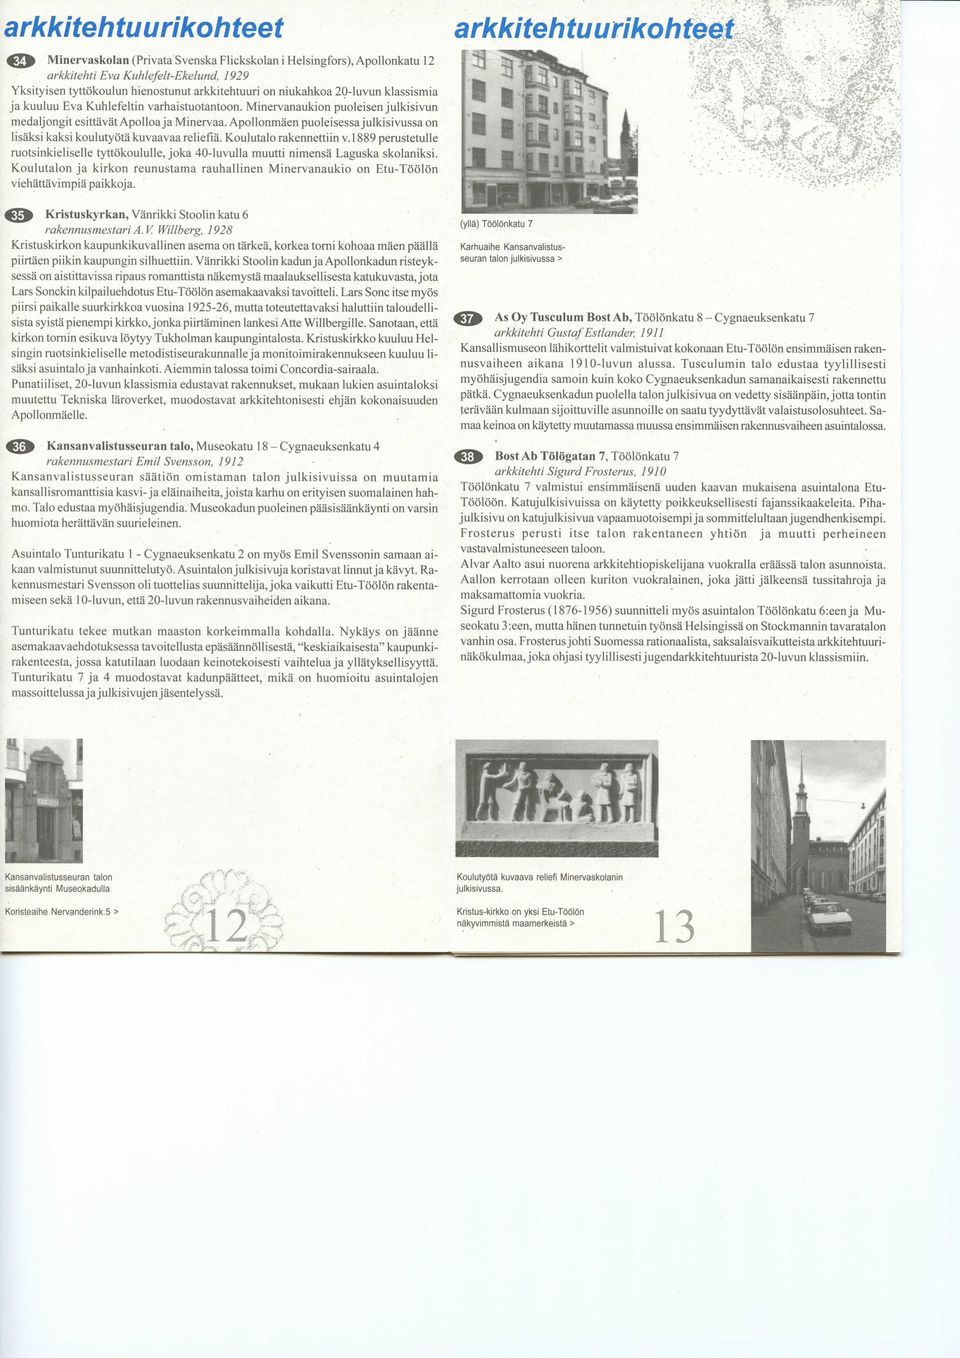 Apollonmaen puoleisessajulkisivussa on lisaksi kaksi koulutyota kuvaavaa reliefia. Koulutalo rakennettiin v.